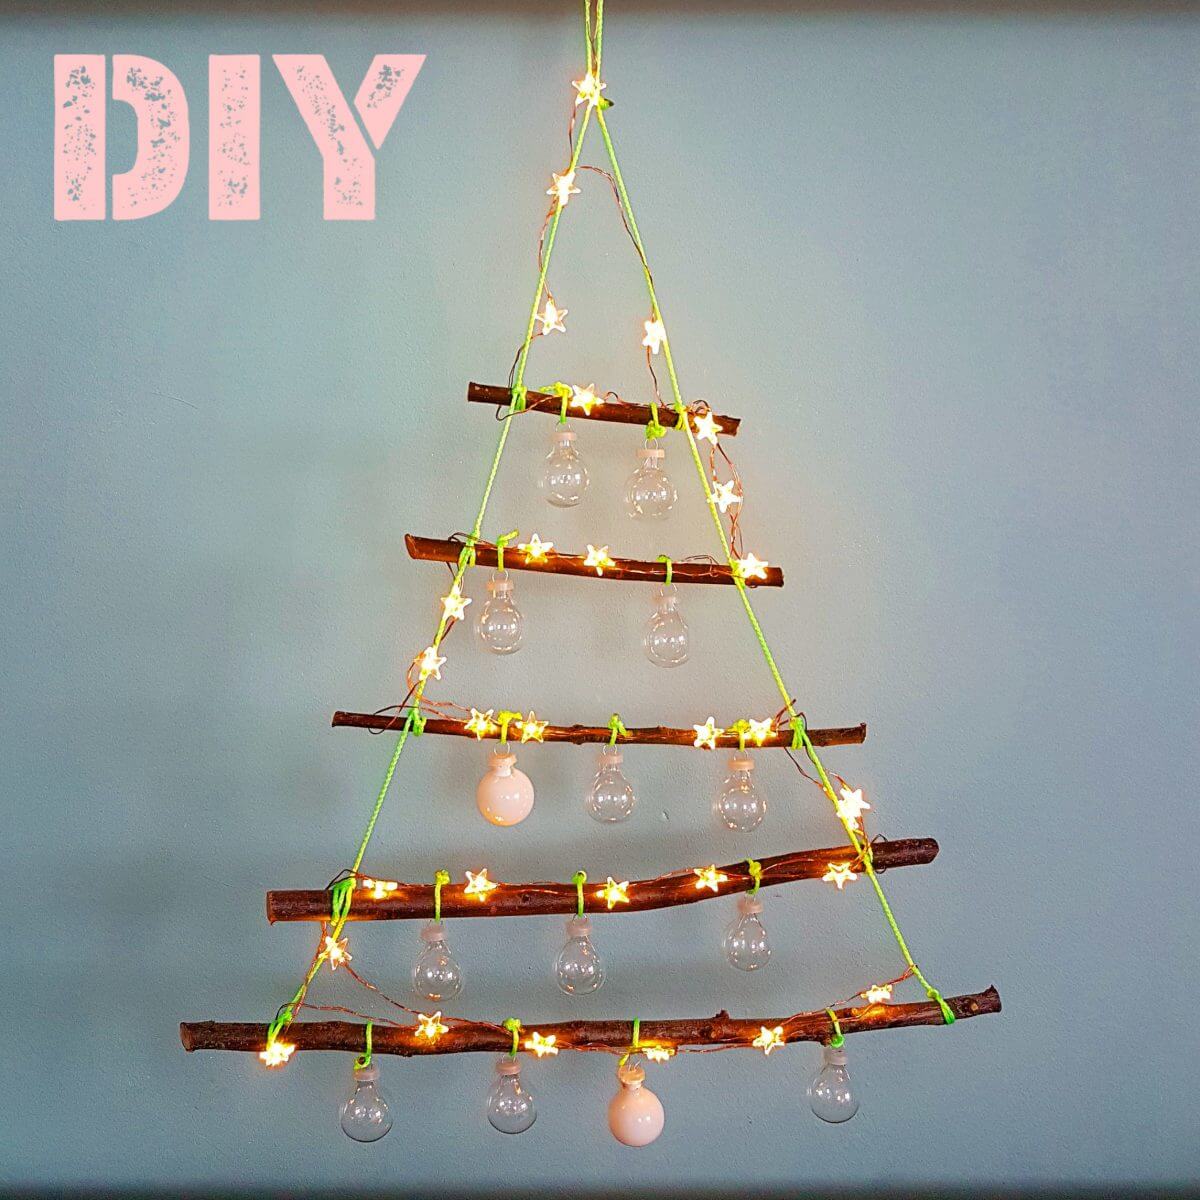 Kerst DIY: kerstboom met lichtjes knutselen van takken. Wat gaat het hard, het is al weer bijna tijd voor kerst. Tijd voor een leuk DIY project voor kerst dus. Deze kerstboom met lichtjes is heel makkelijk om zelf te knutselen.